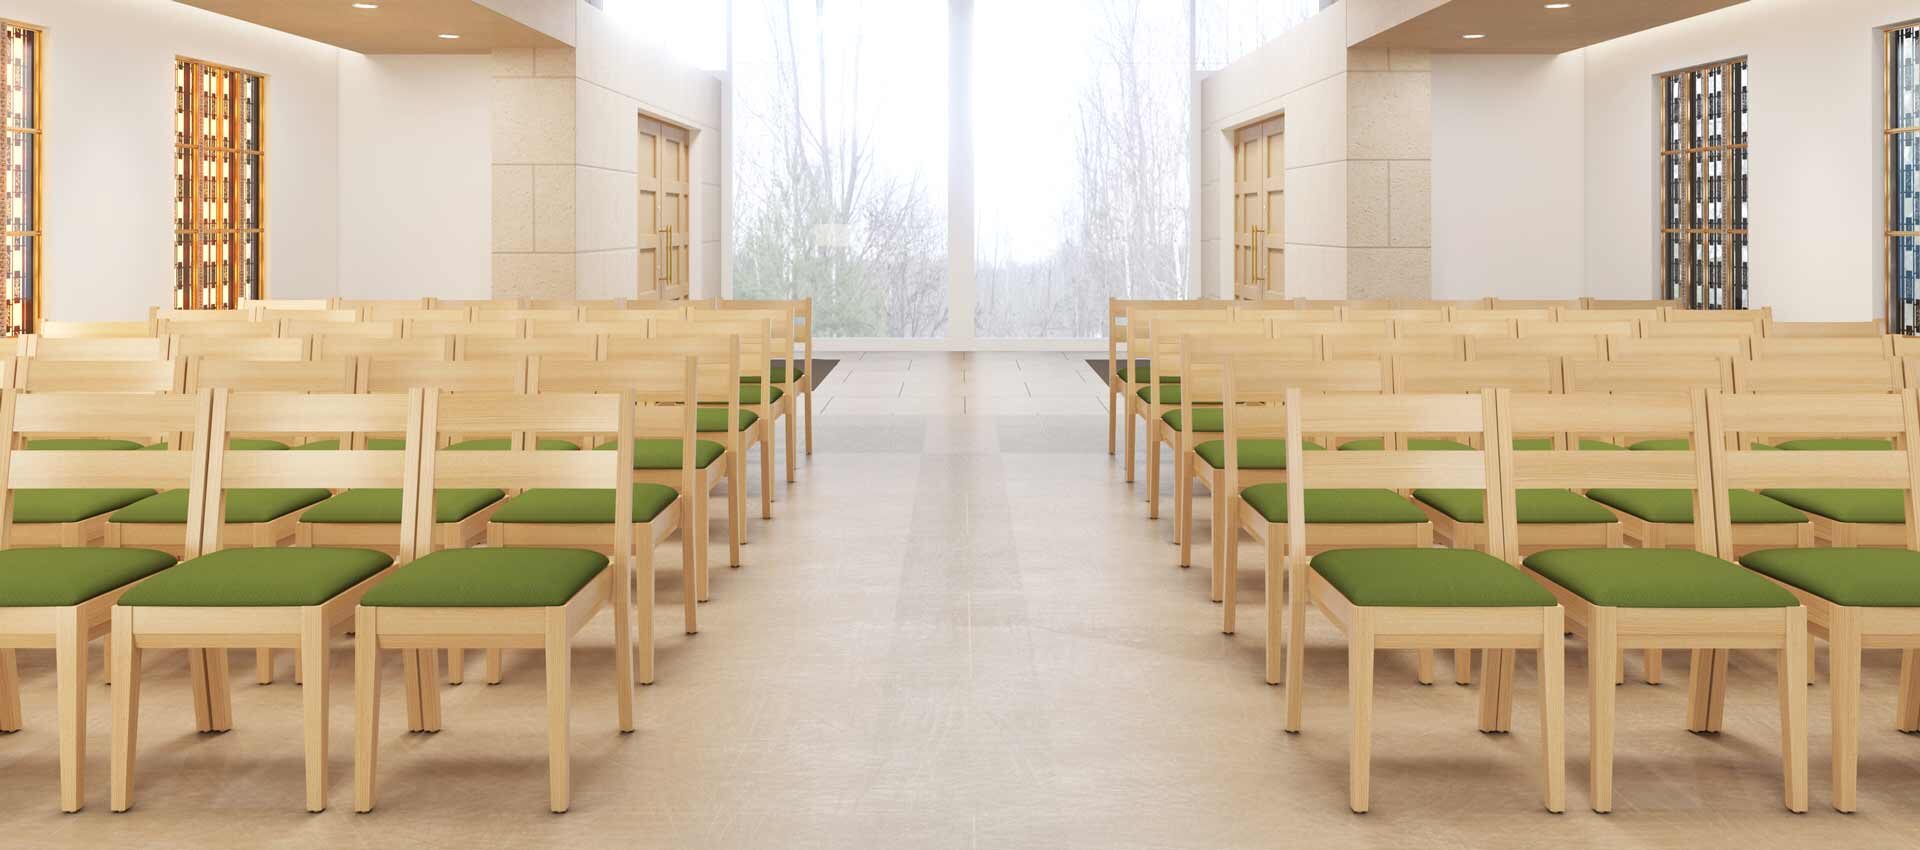 Wood_Church_Chairs